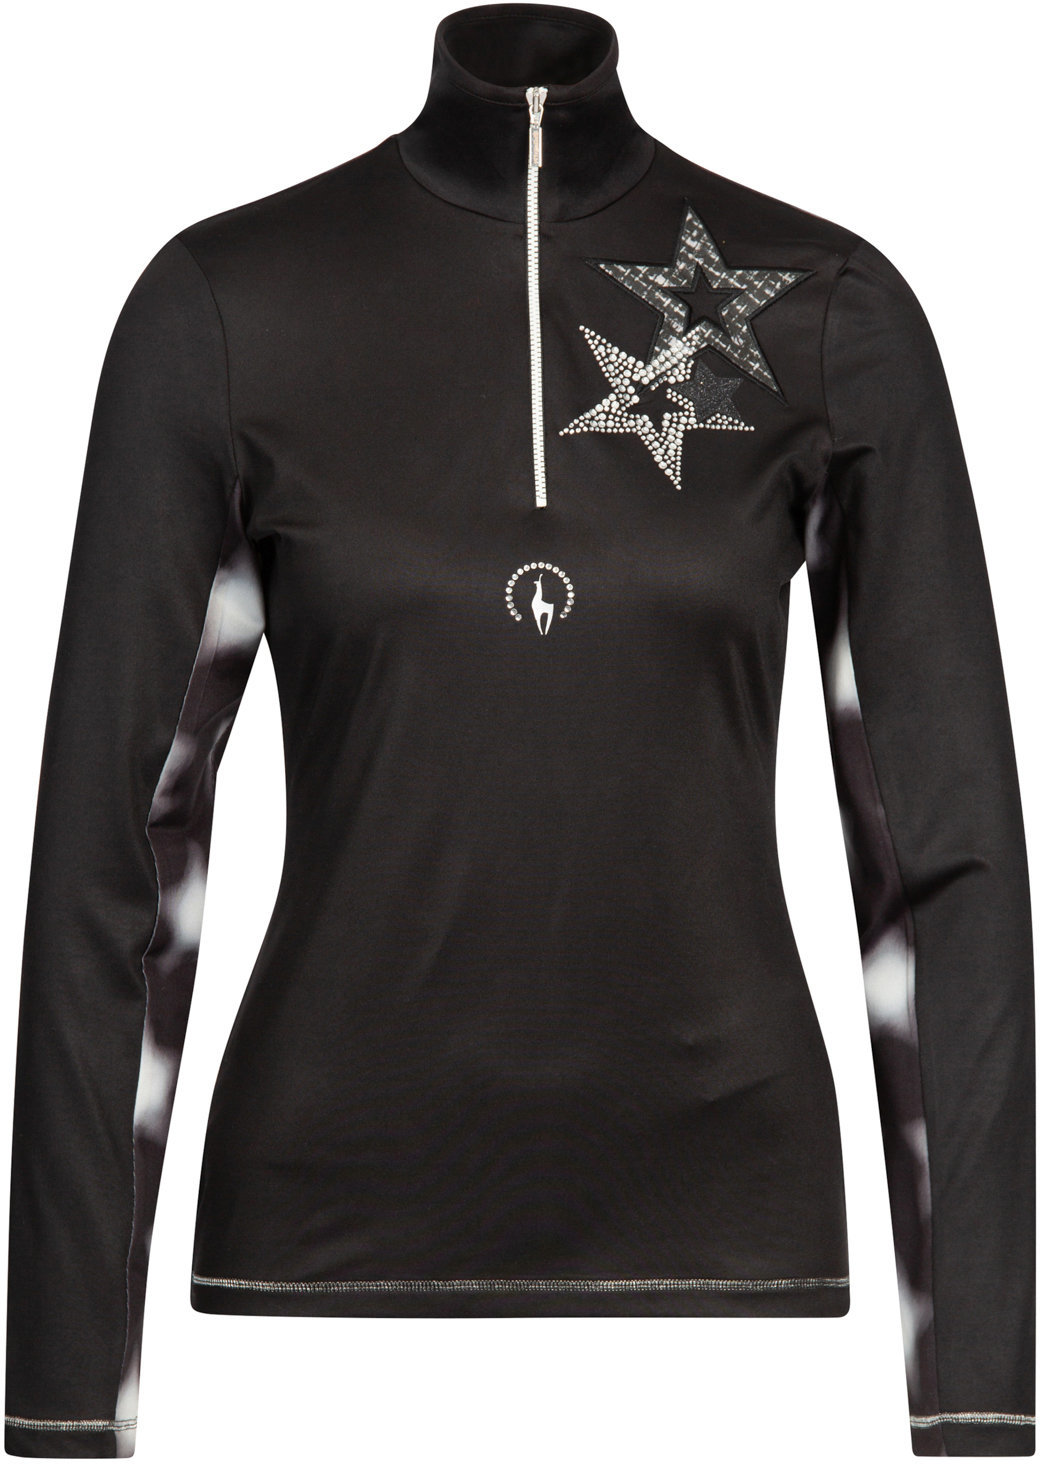 T-shirt/casaco com capuz para esqui Sportalm Julie Womens Sweater Black 38